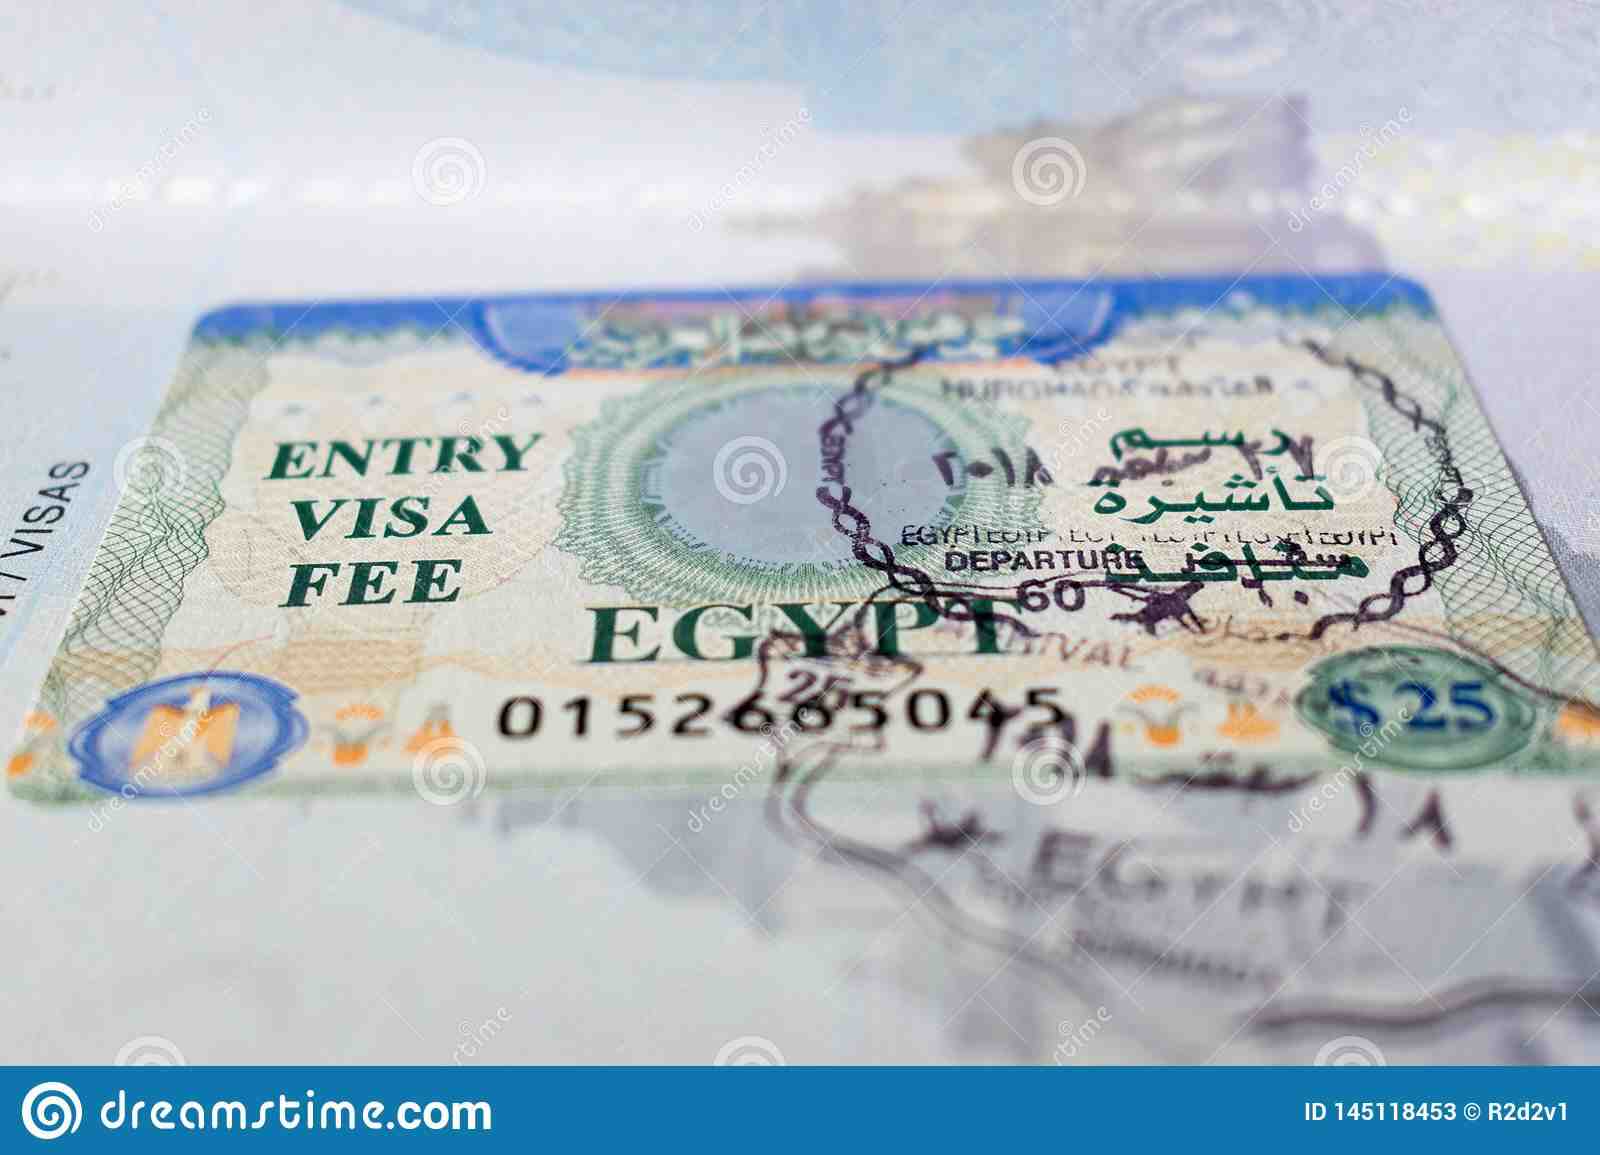 ¿Cómo obtener una visa para ir a Egipto?